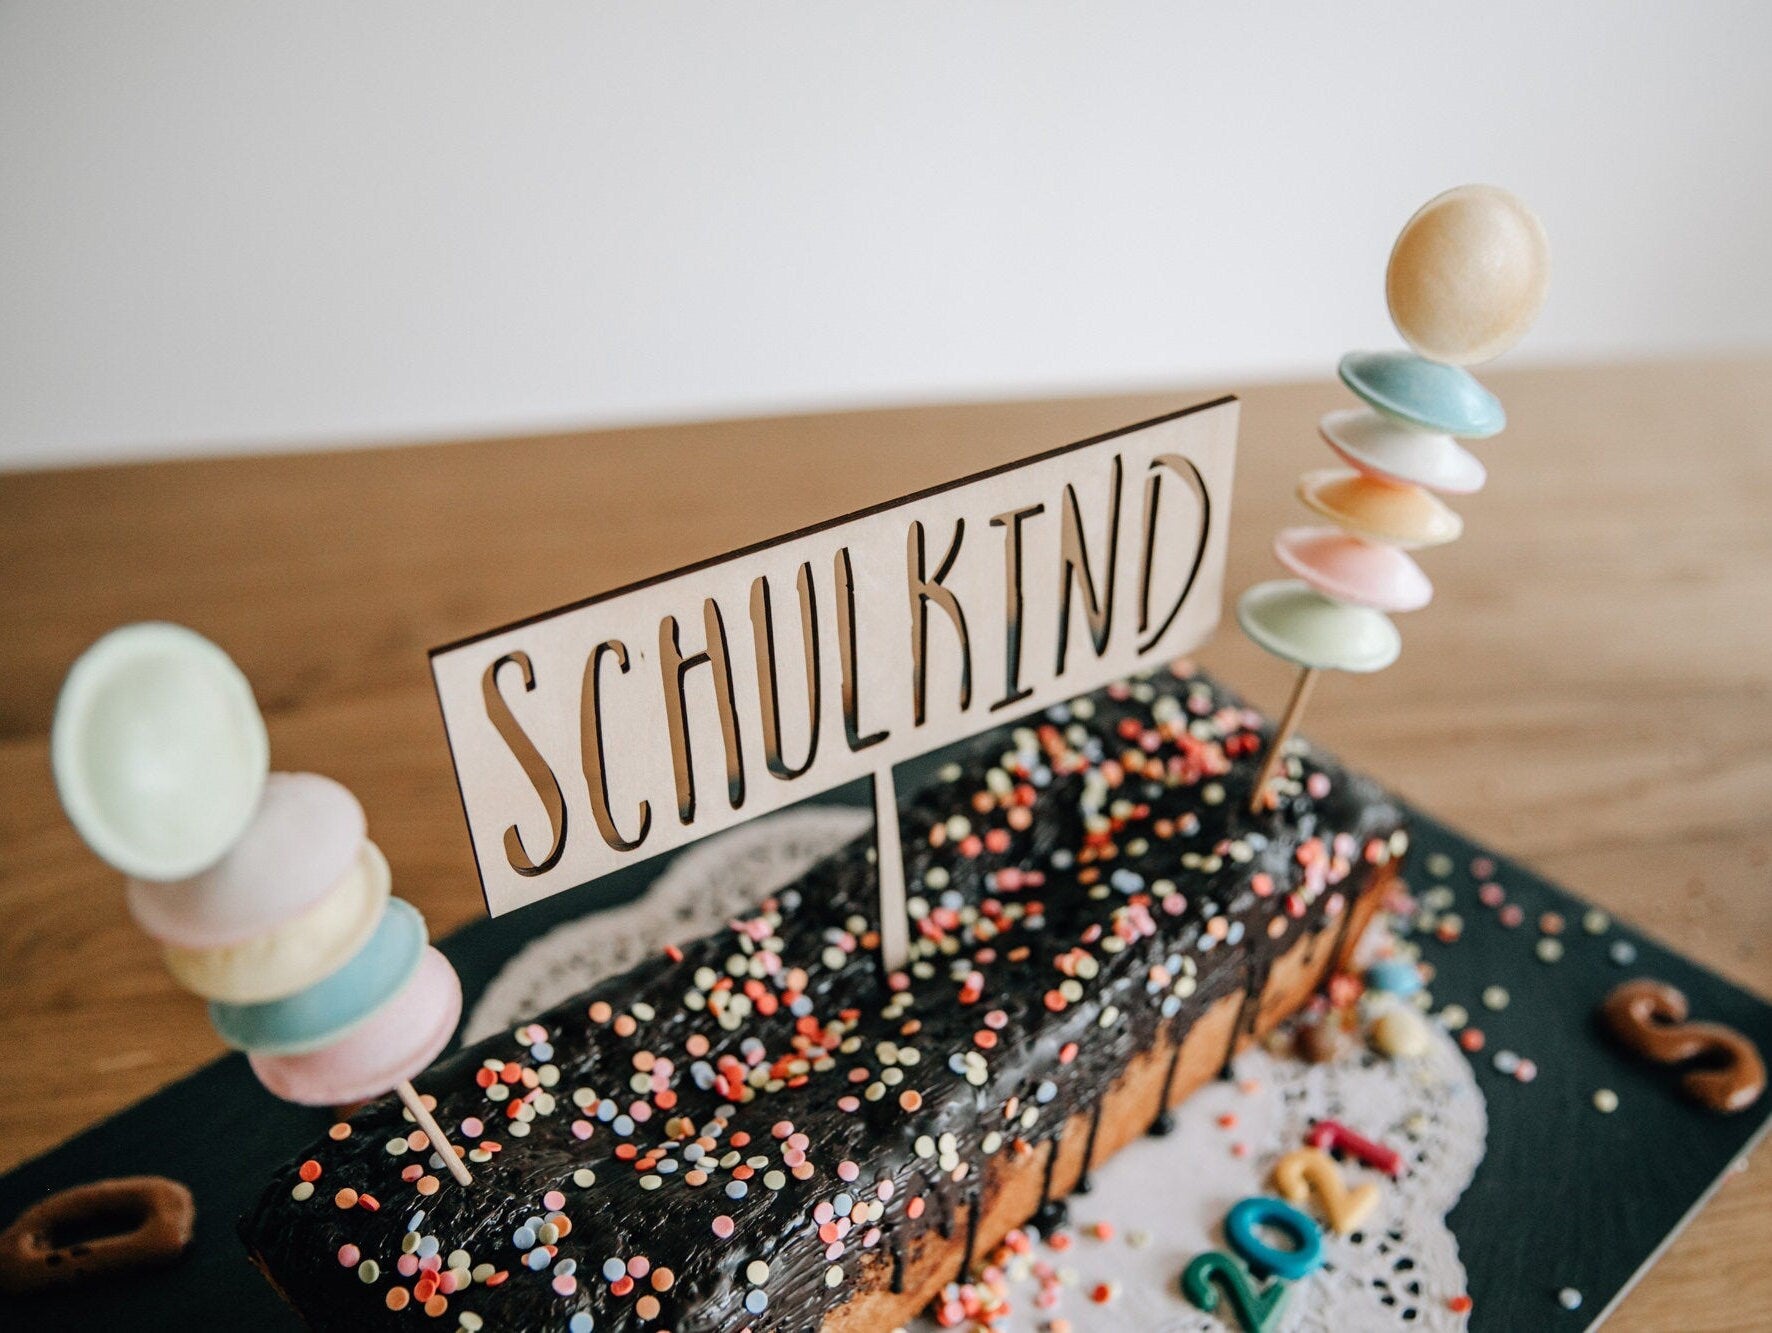 Schulkind Cake Topper / Kuchendeko Schulanfang / Kuchen Topper Schulkind